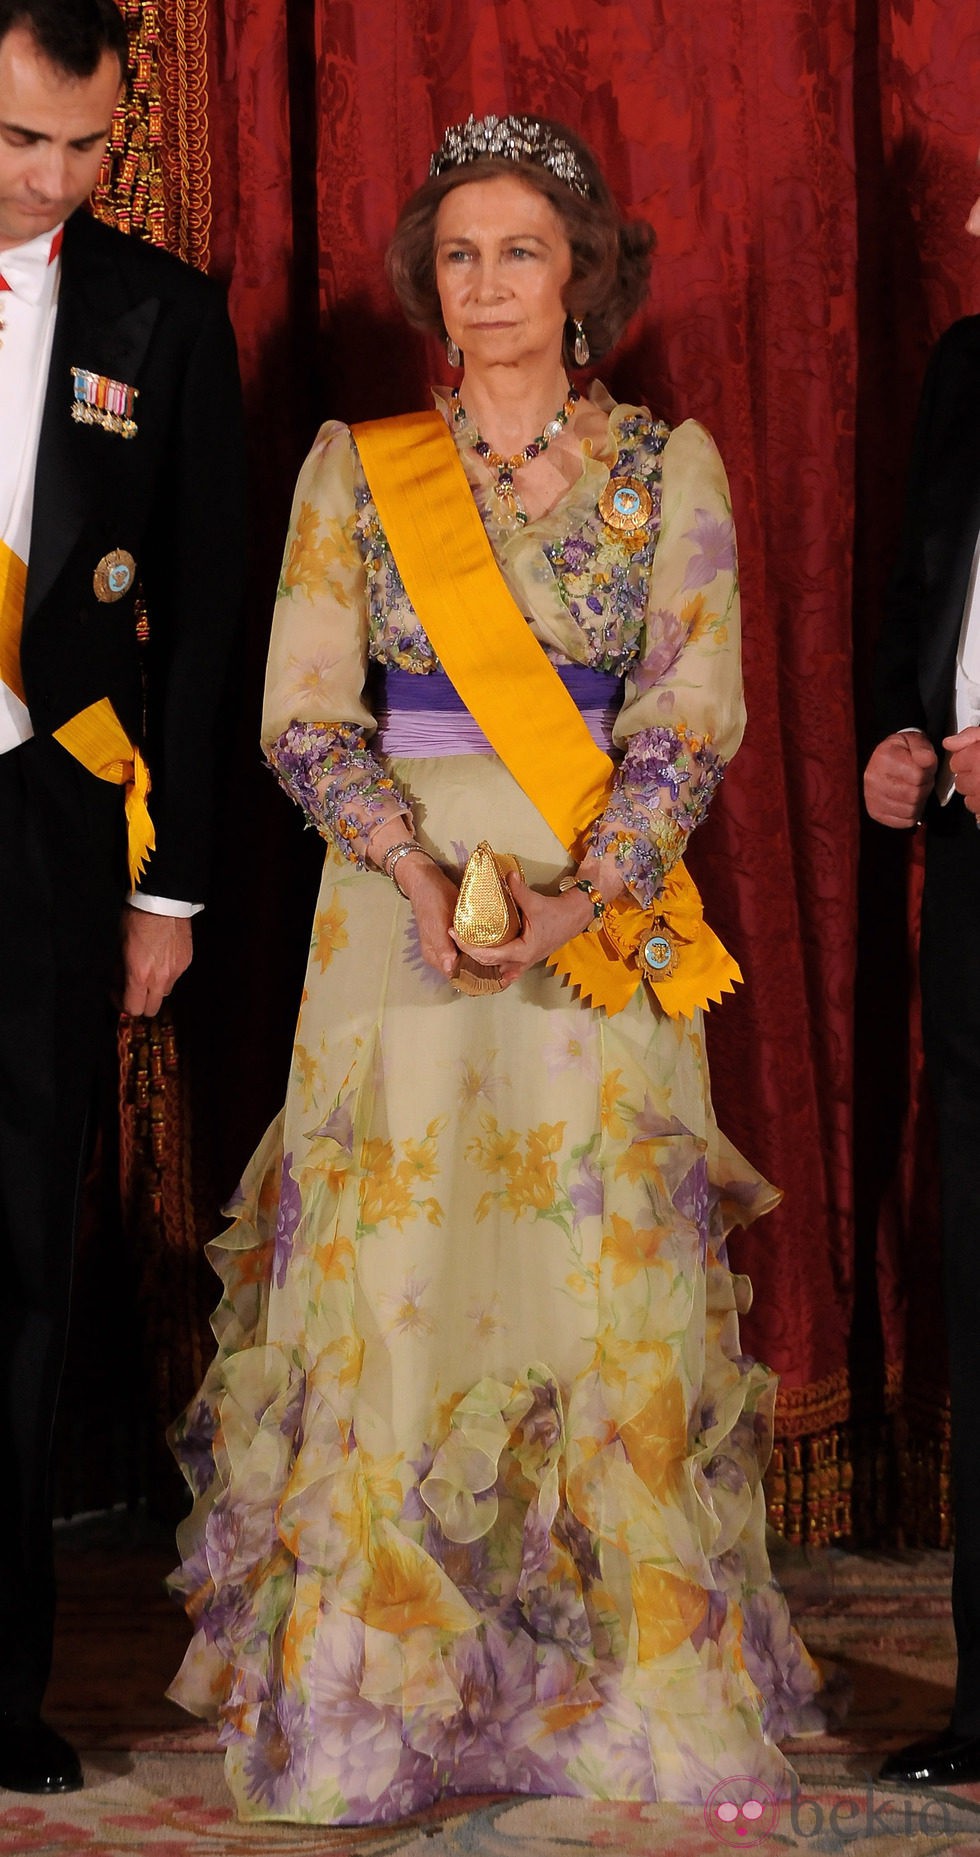 Look de la reina Sofía con vestido de gala largo en color amarillo pastel con llamativos detalles florales en tonos morados y amarillo intenso